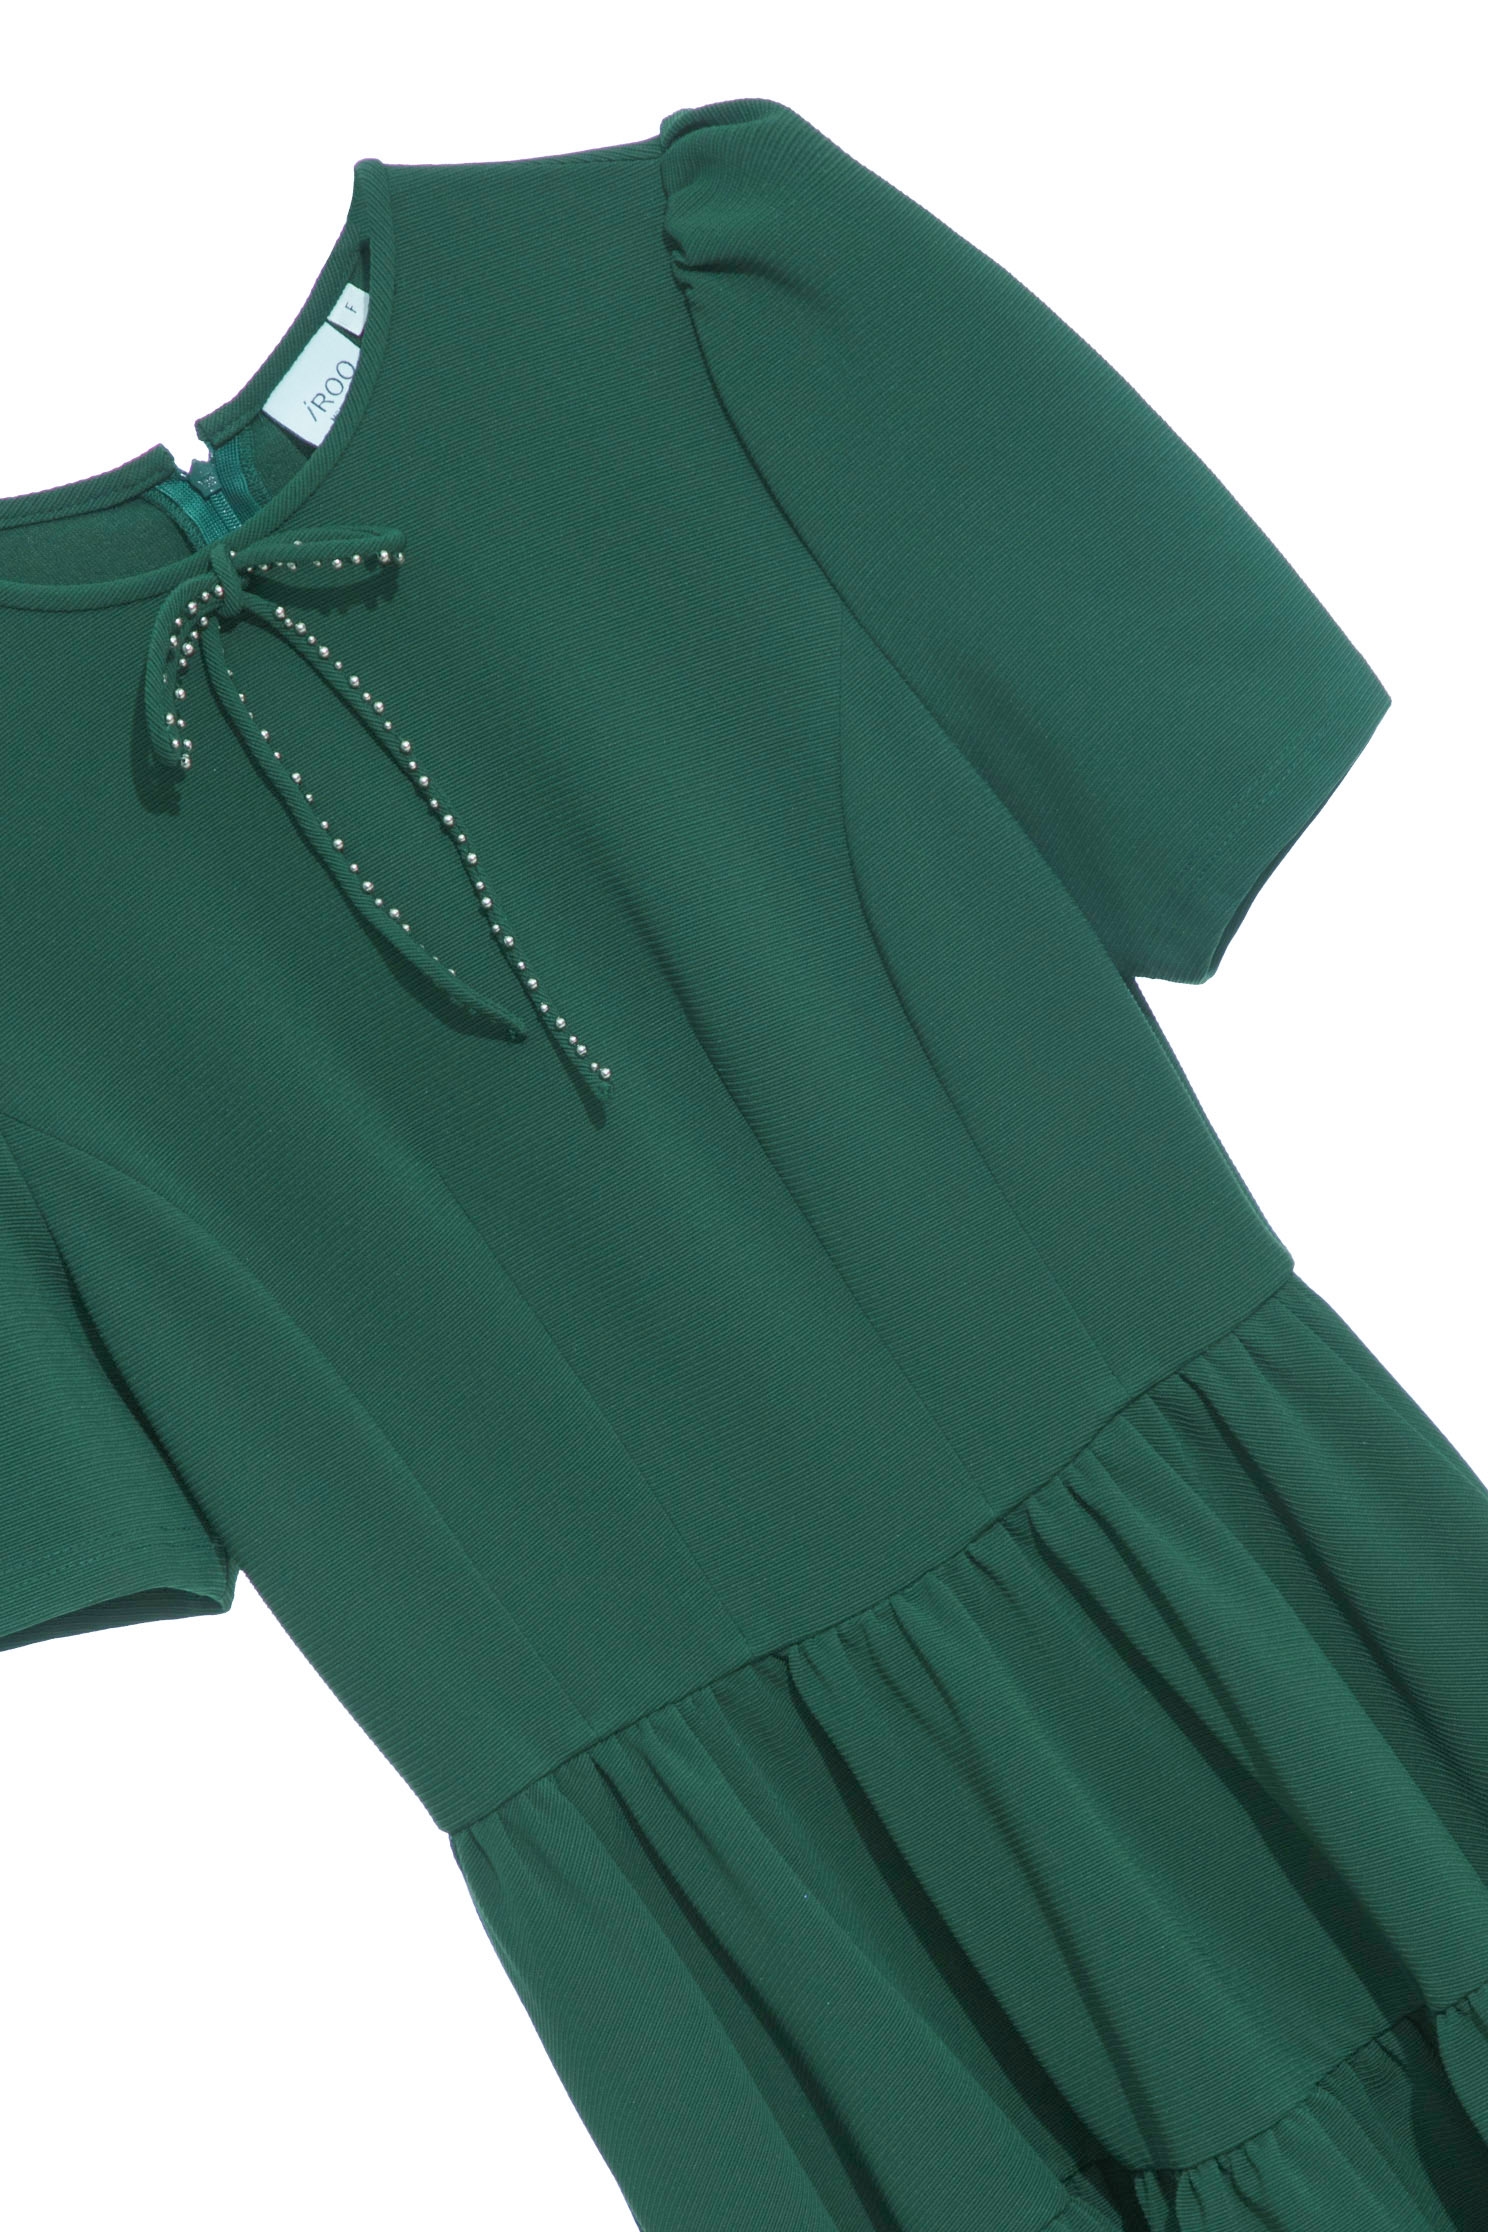 典雅宮廷風銅綠色洋裝典雅宮廷風銅綠色洋裝,一般洋裝,女王風範,春夏穿搭,洋裝週,約會特輯,蝴蝶結